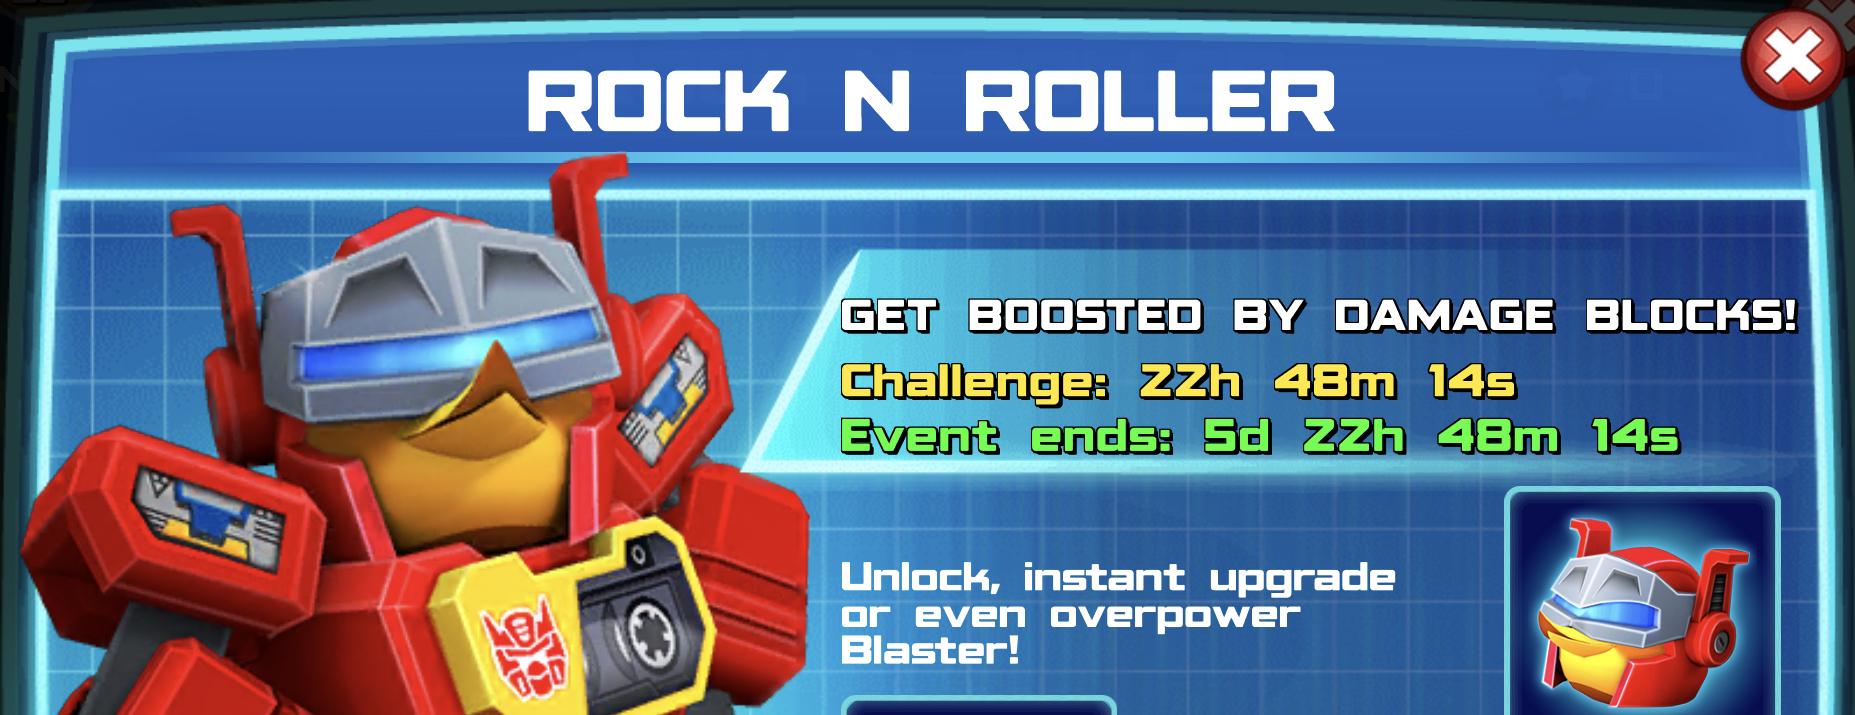 Rock N Roller Event Banner